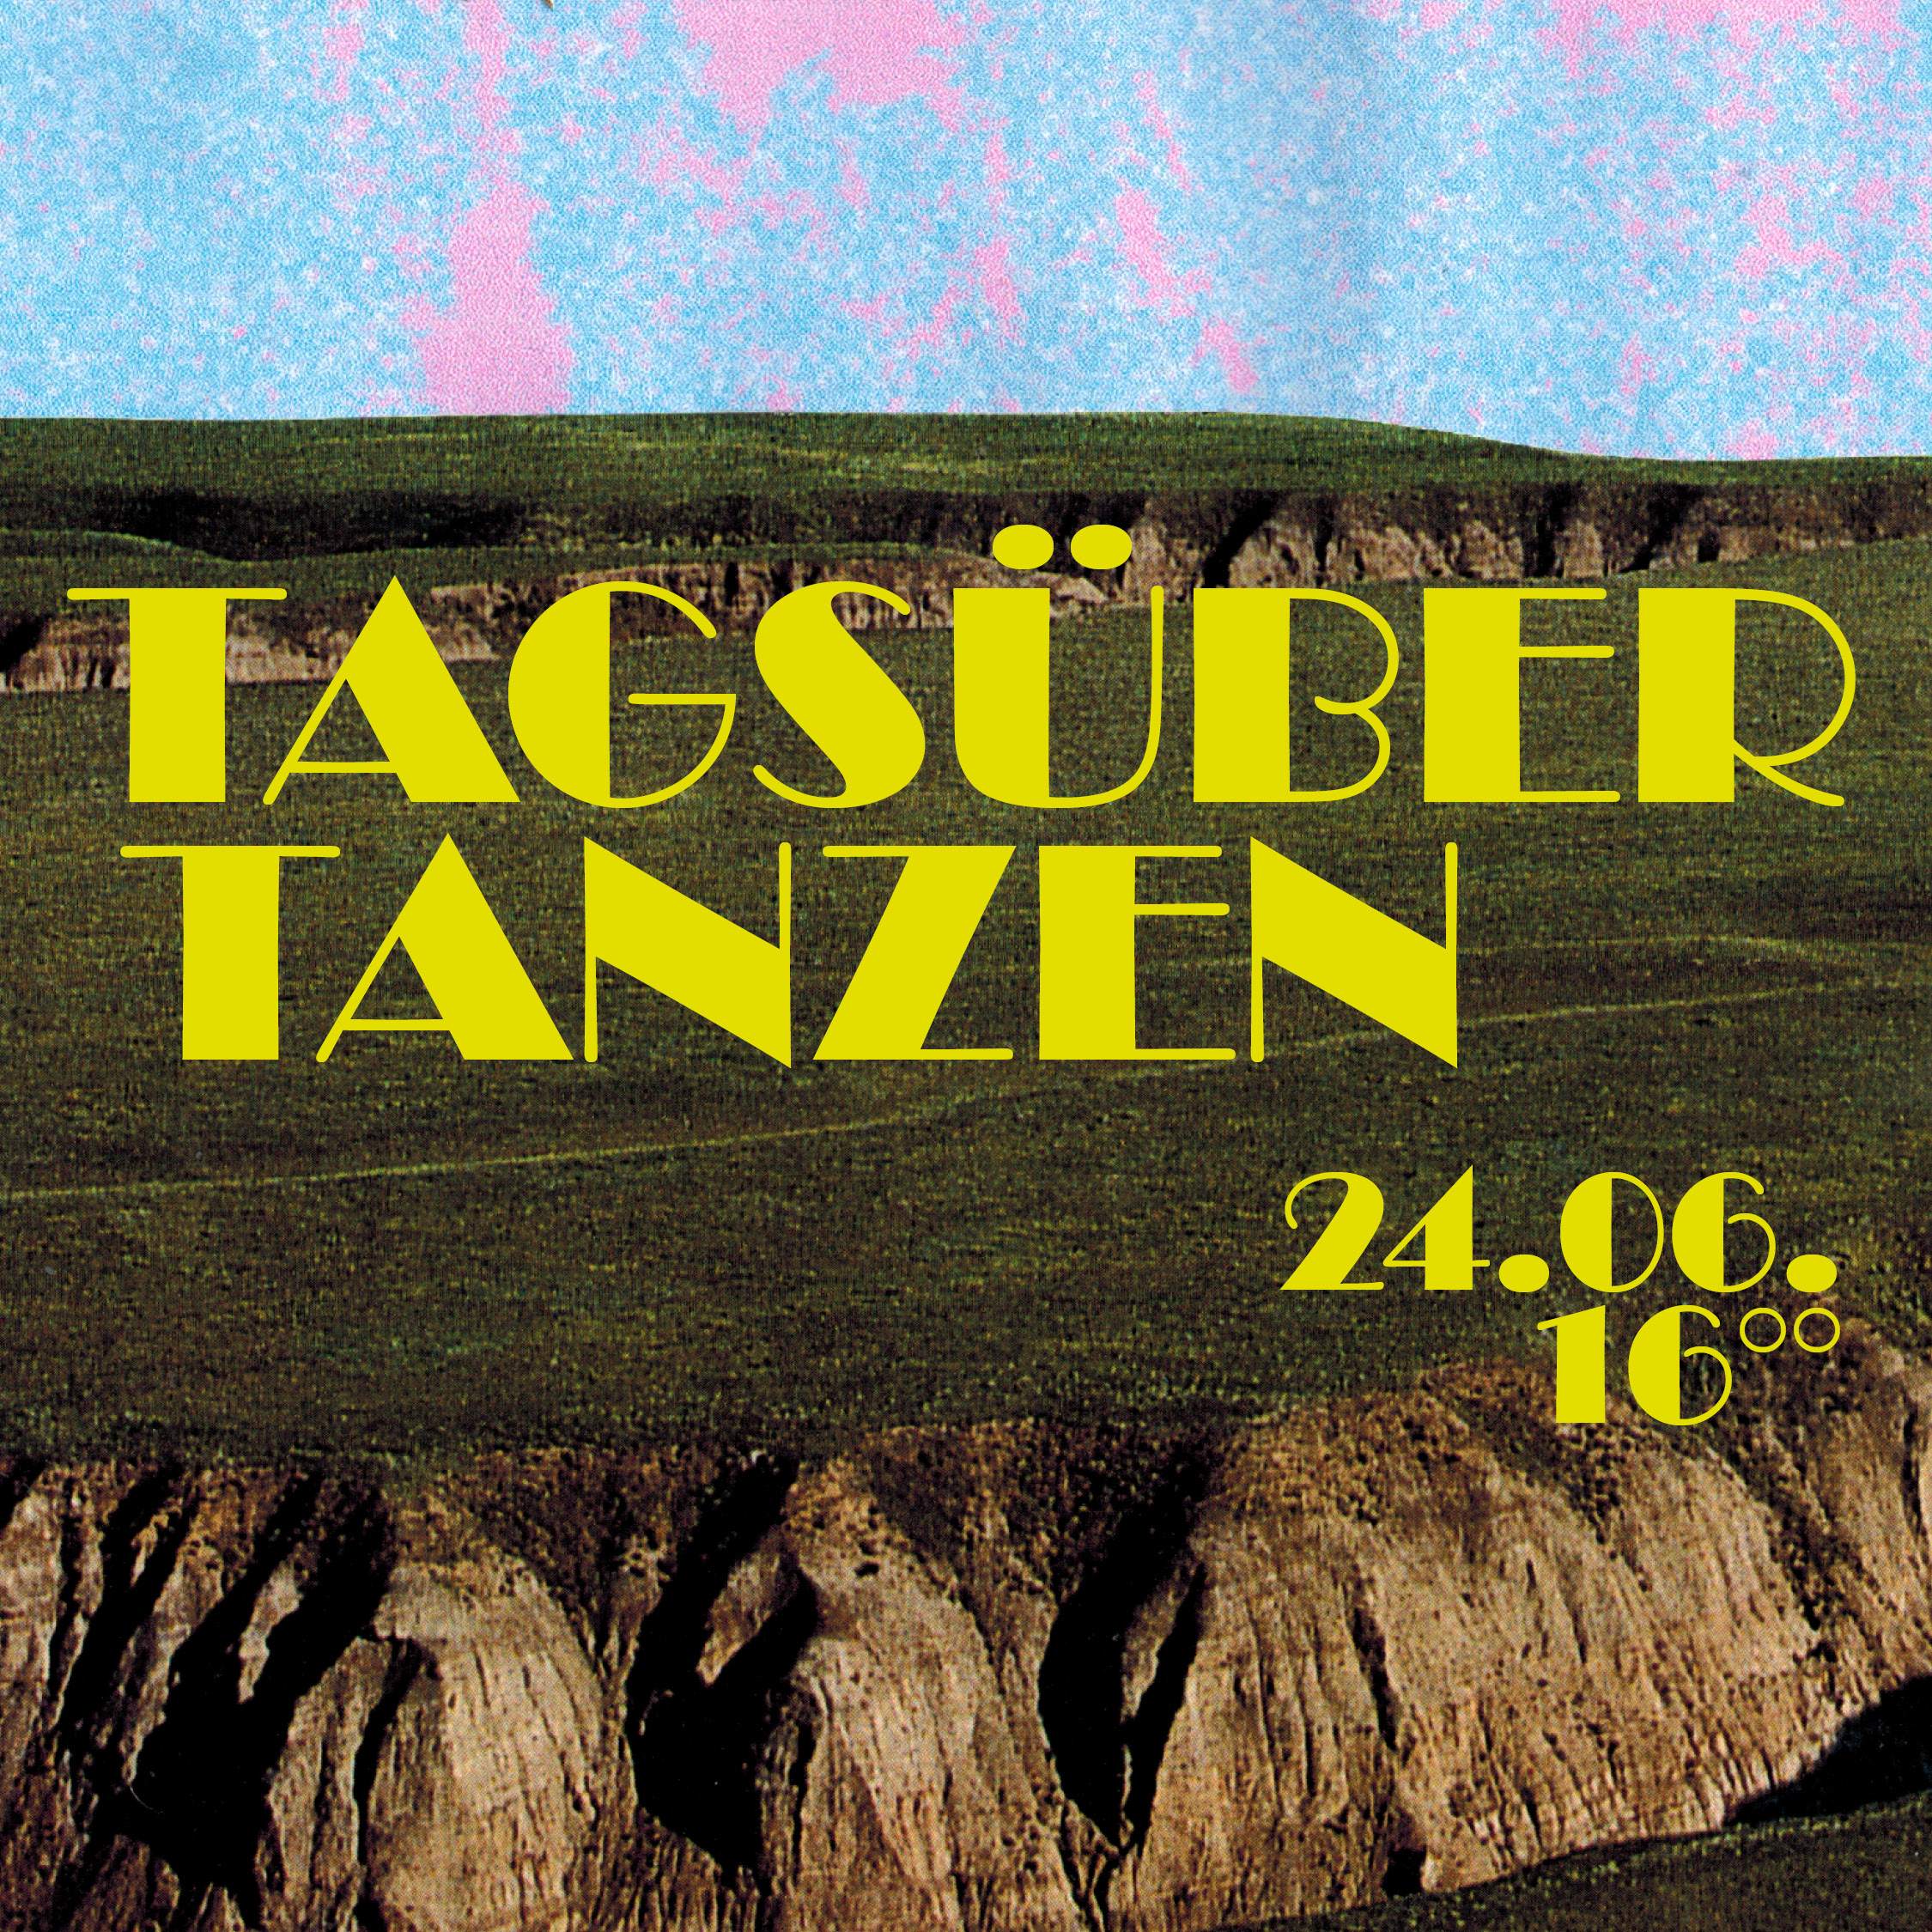 Tagsüber Tanzen - フライヤー表